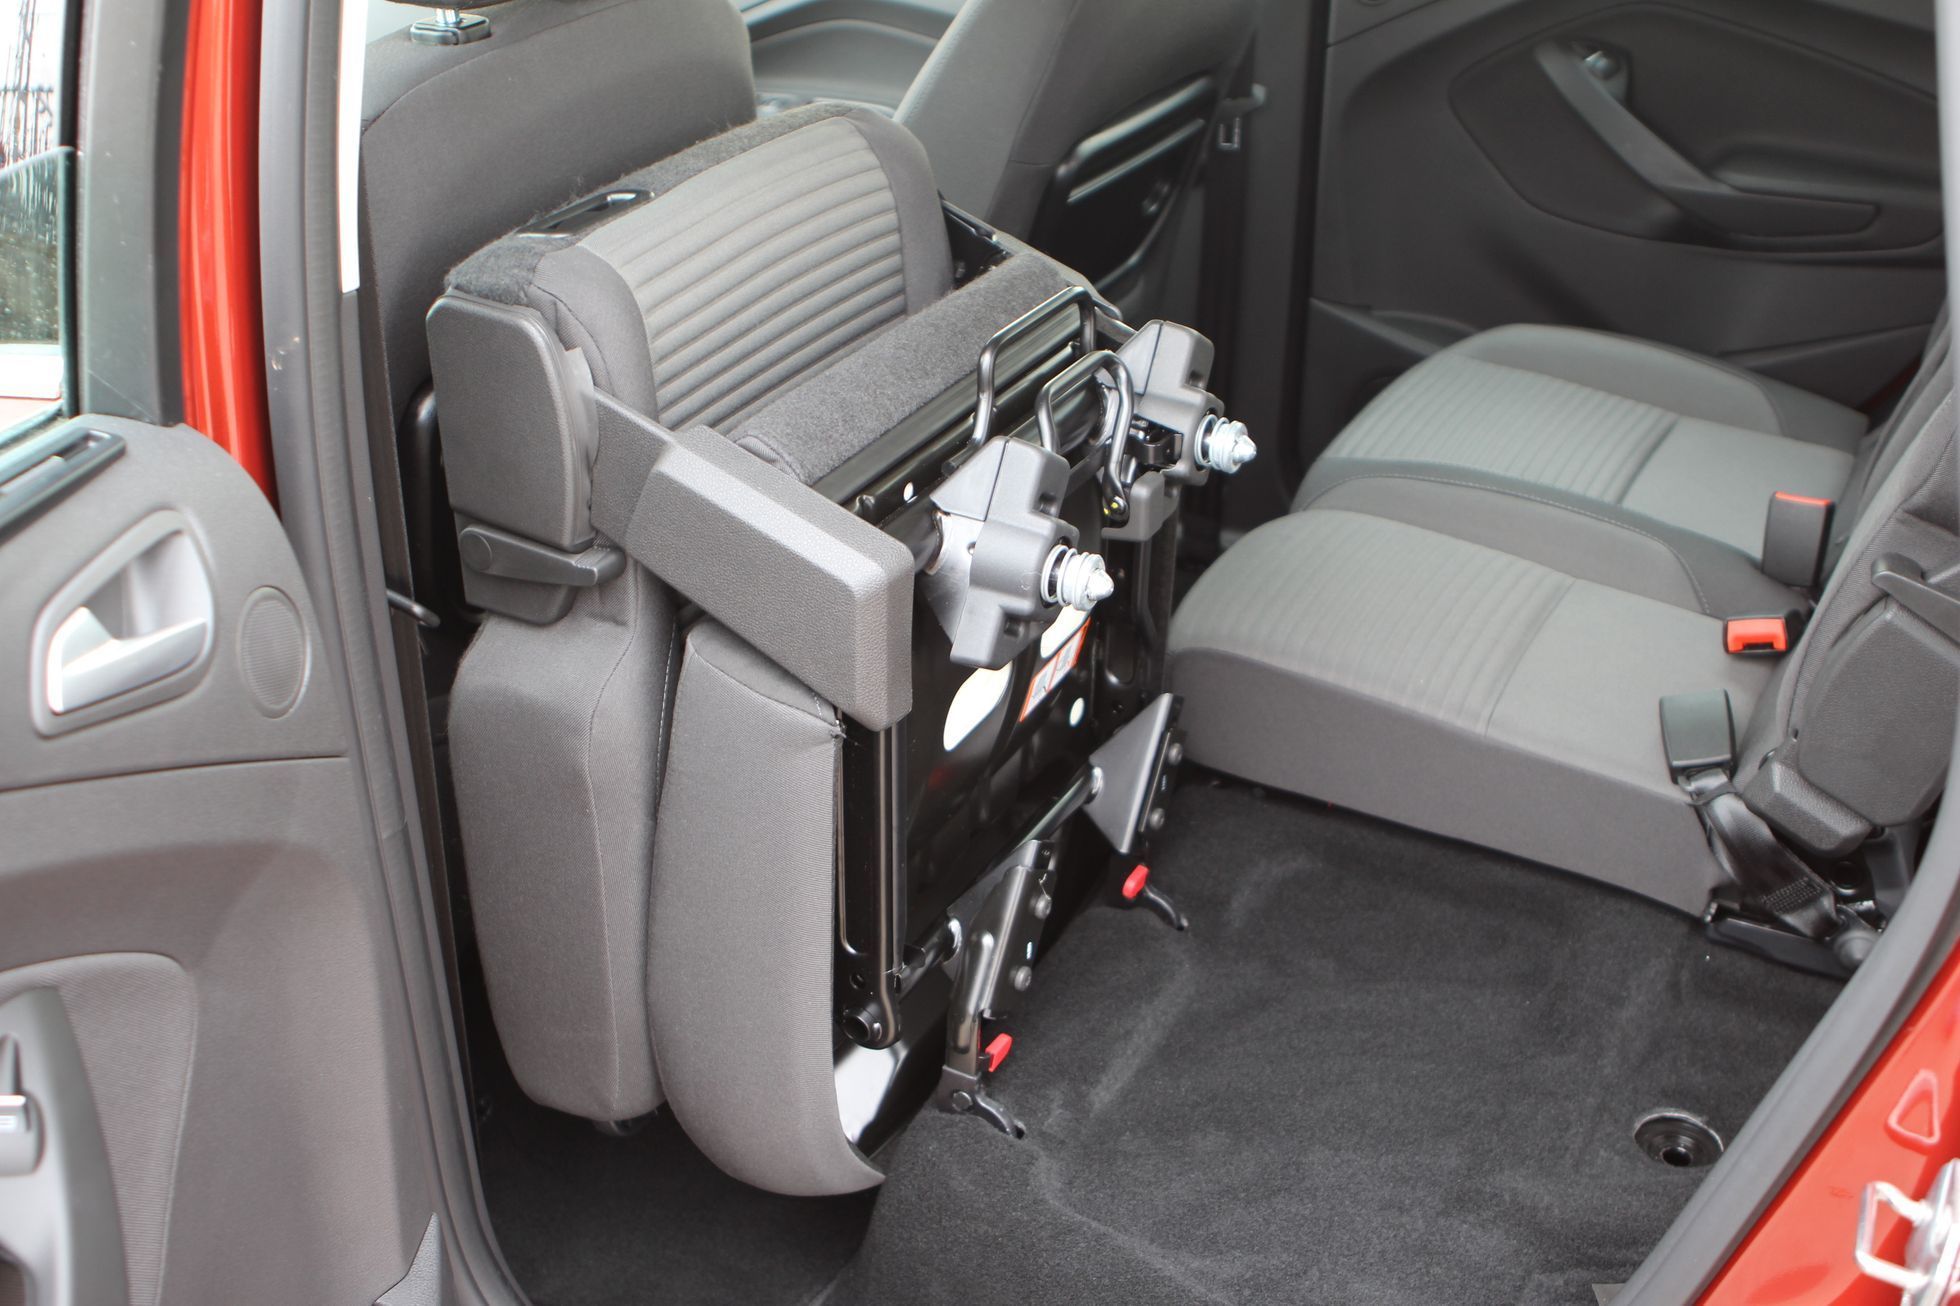 Ford C-Max - vyjímatelná sedačka